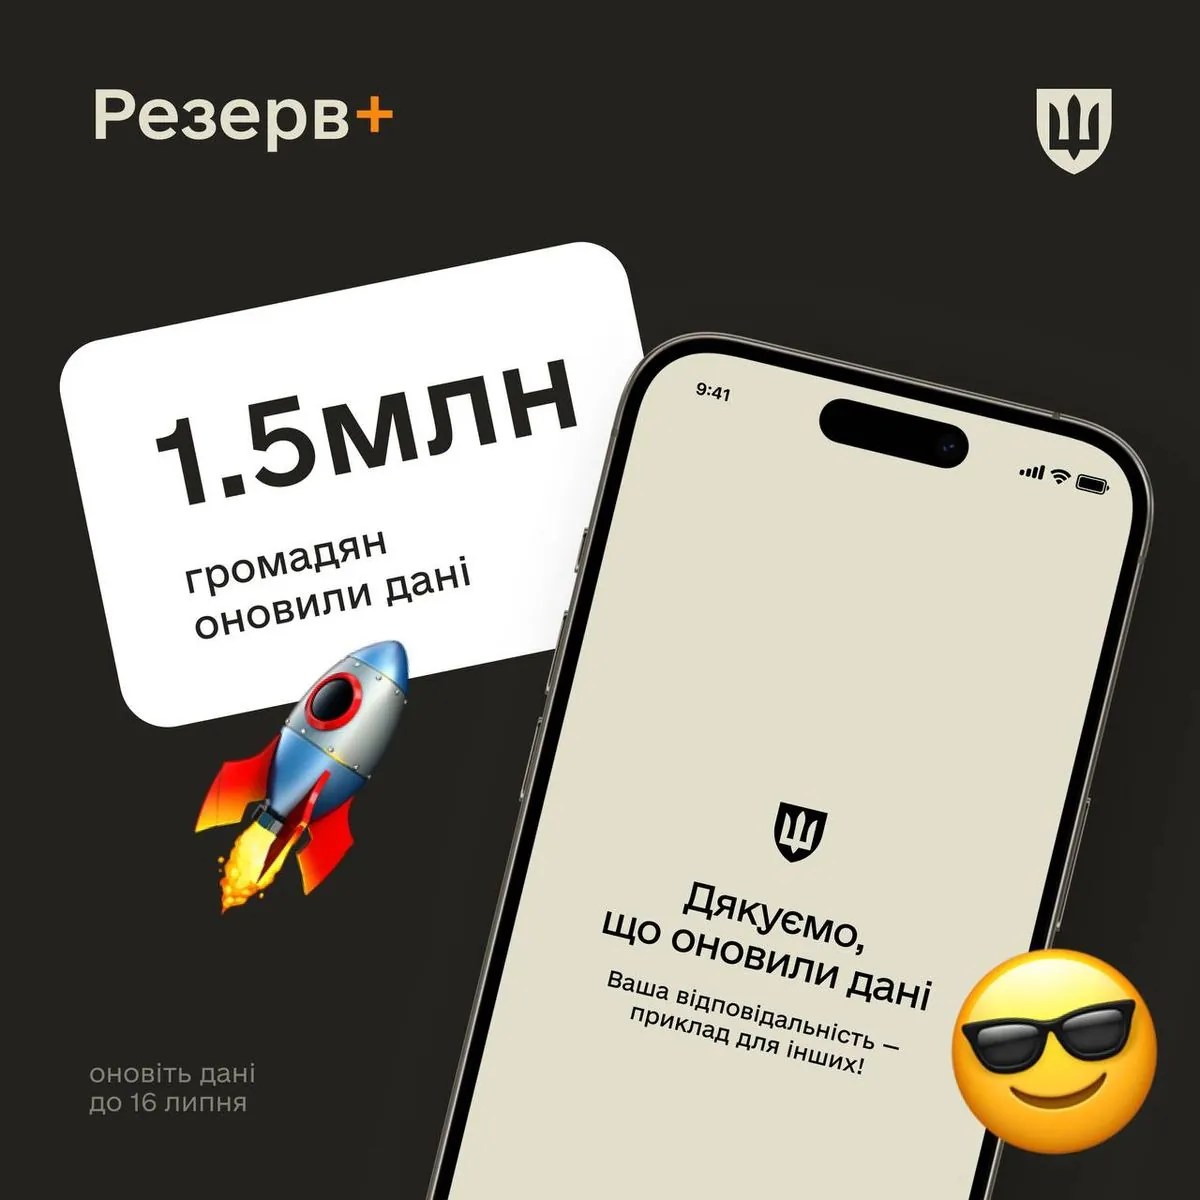 В Україні вже 1,5 мільйона громадян оновили дані через додаток "Резерв+"